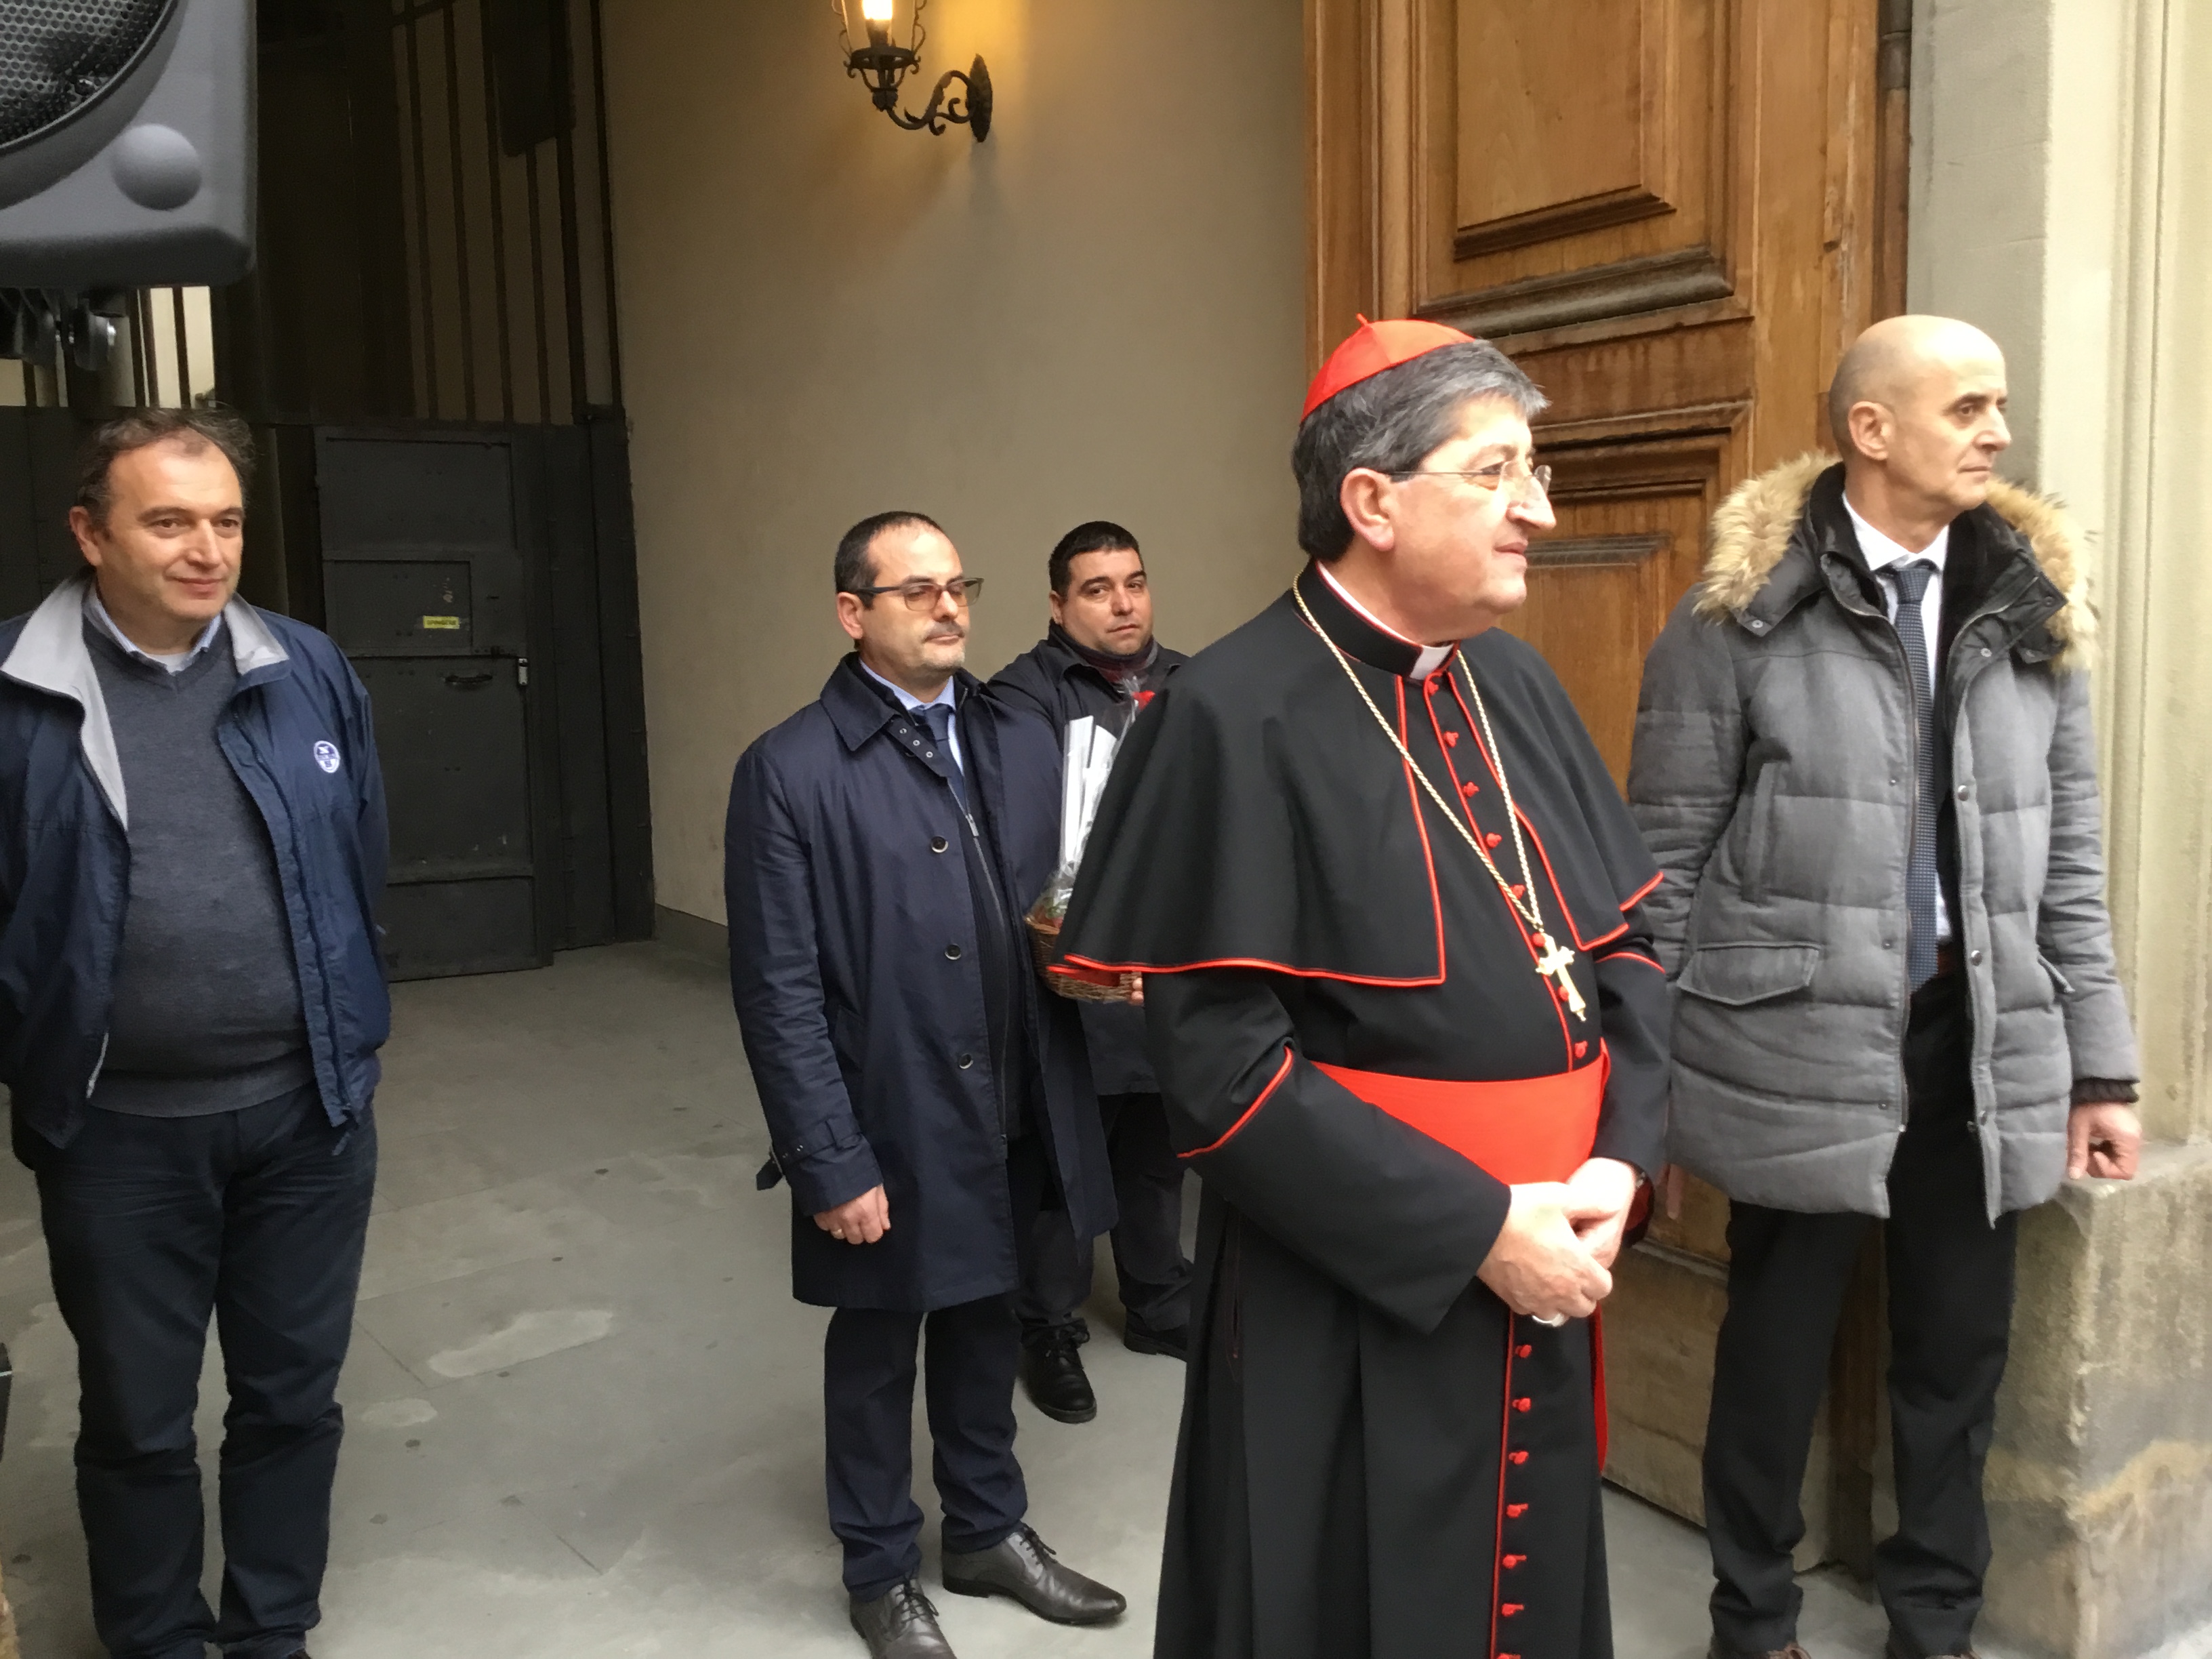 Corteo storico auguri Natale 2019 – Foto Giornalista Franco Mariani (2)